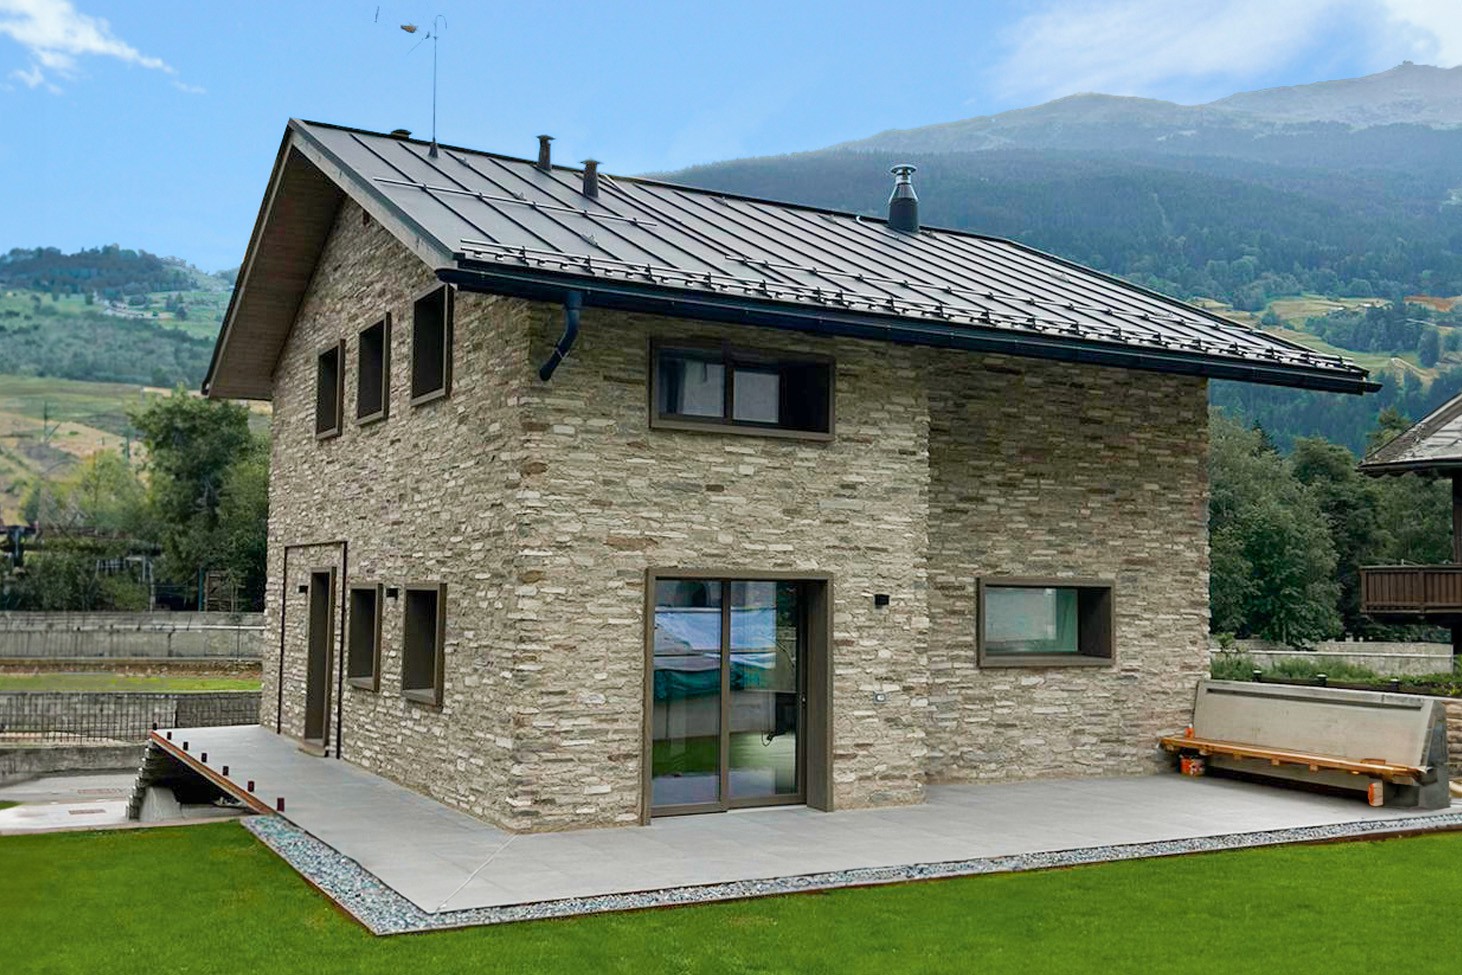 Villa in montagna con muri in pietra ricostruita